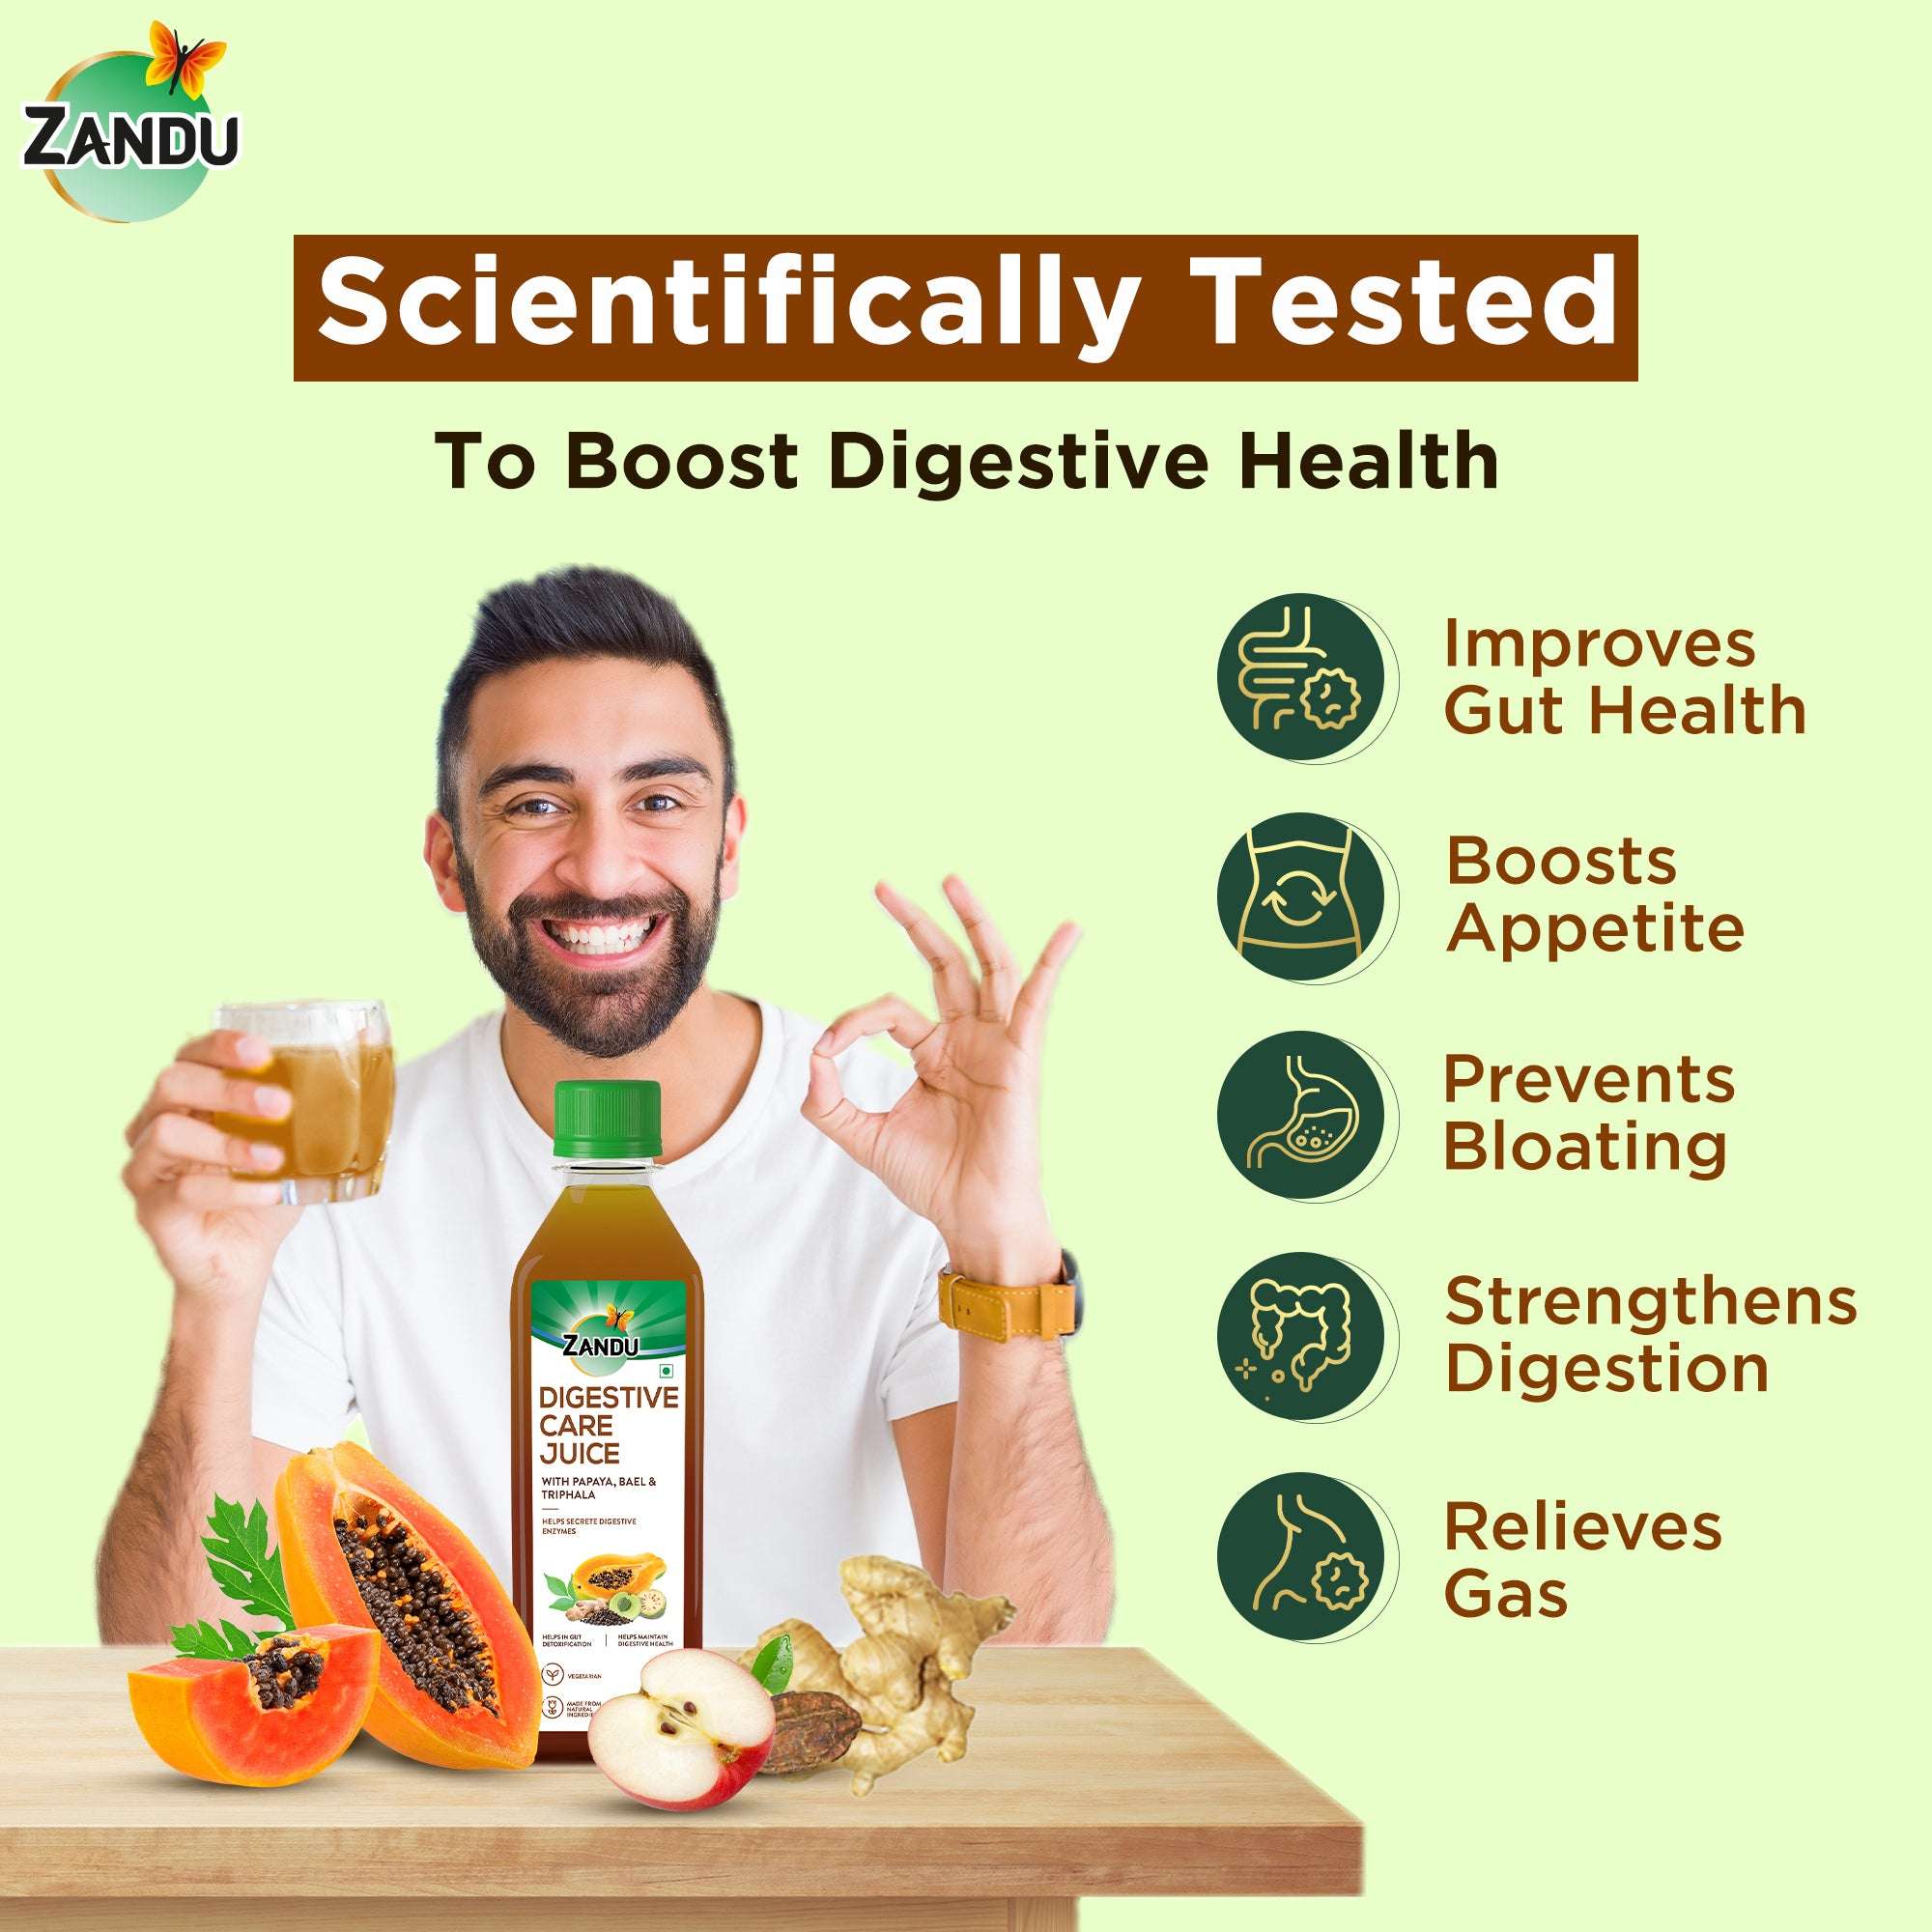 Zandu Digestive boost juice